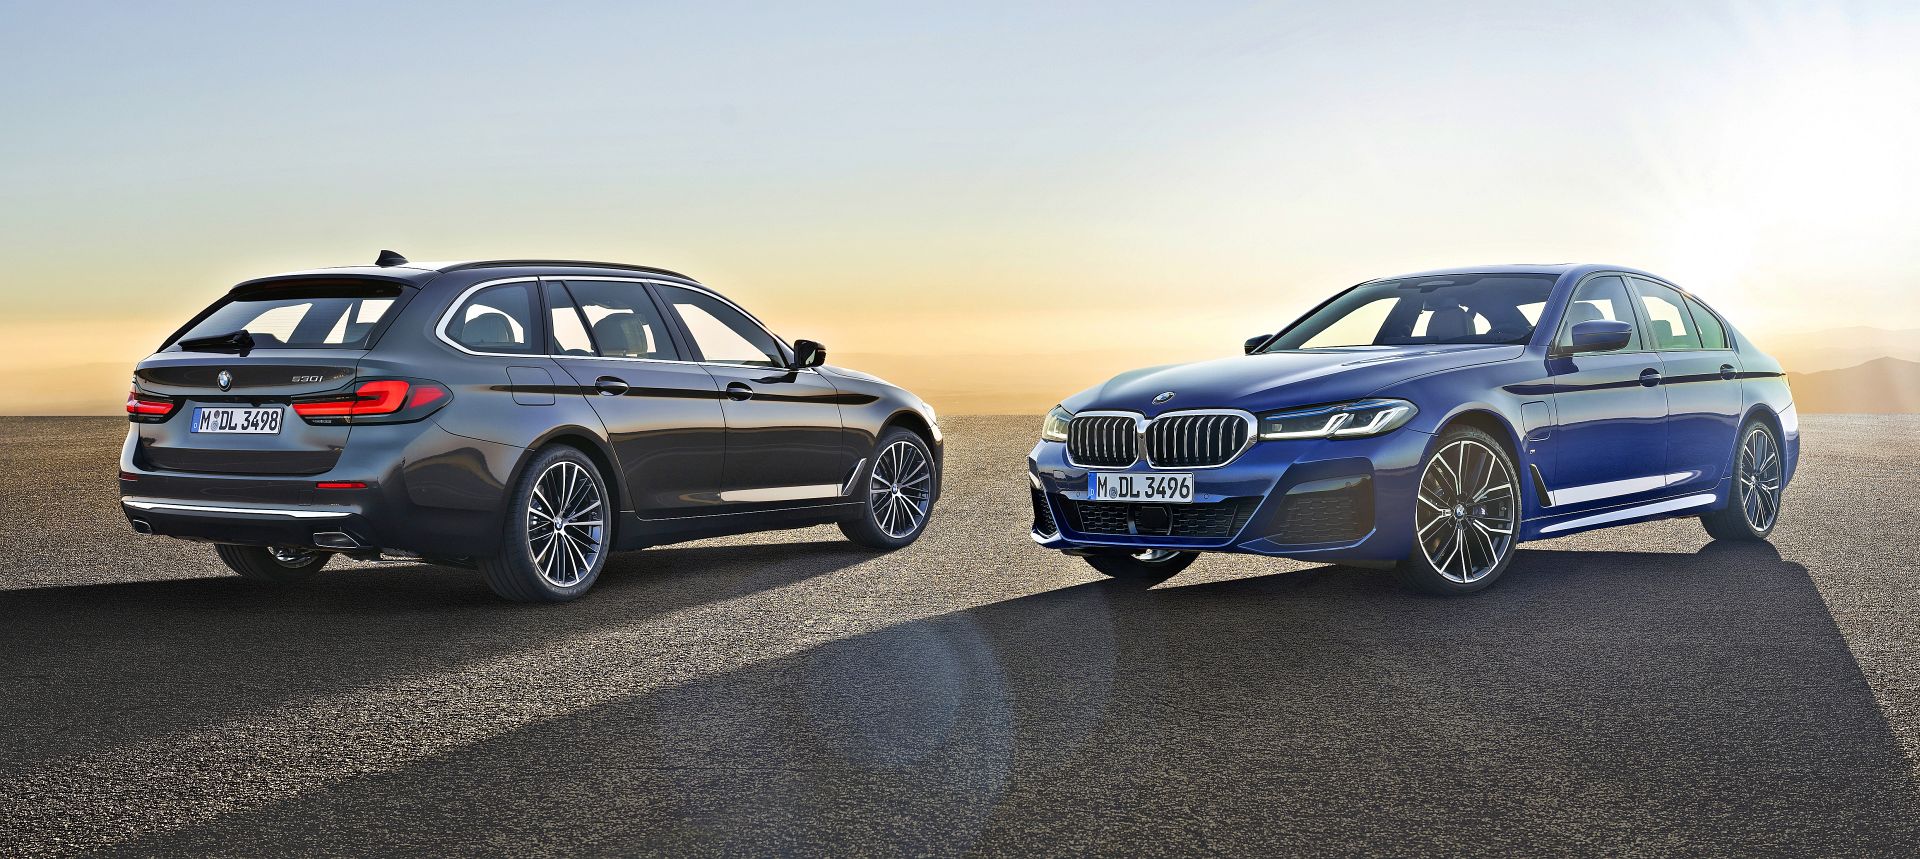 BMW serii 5 po liftingu oficjalne zdjęcia i informacje